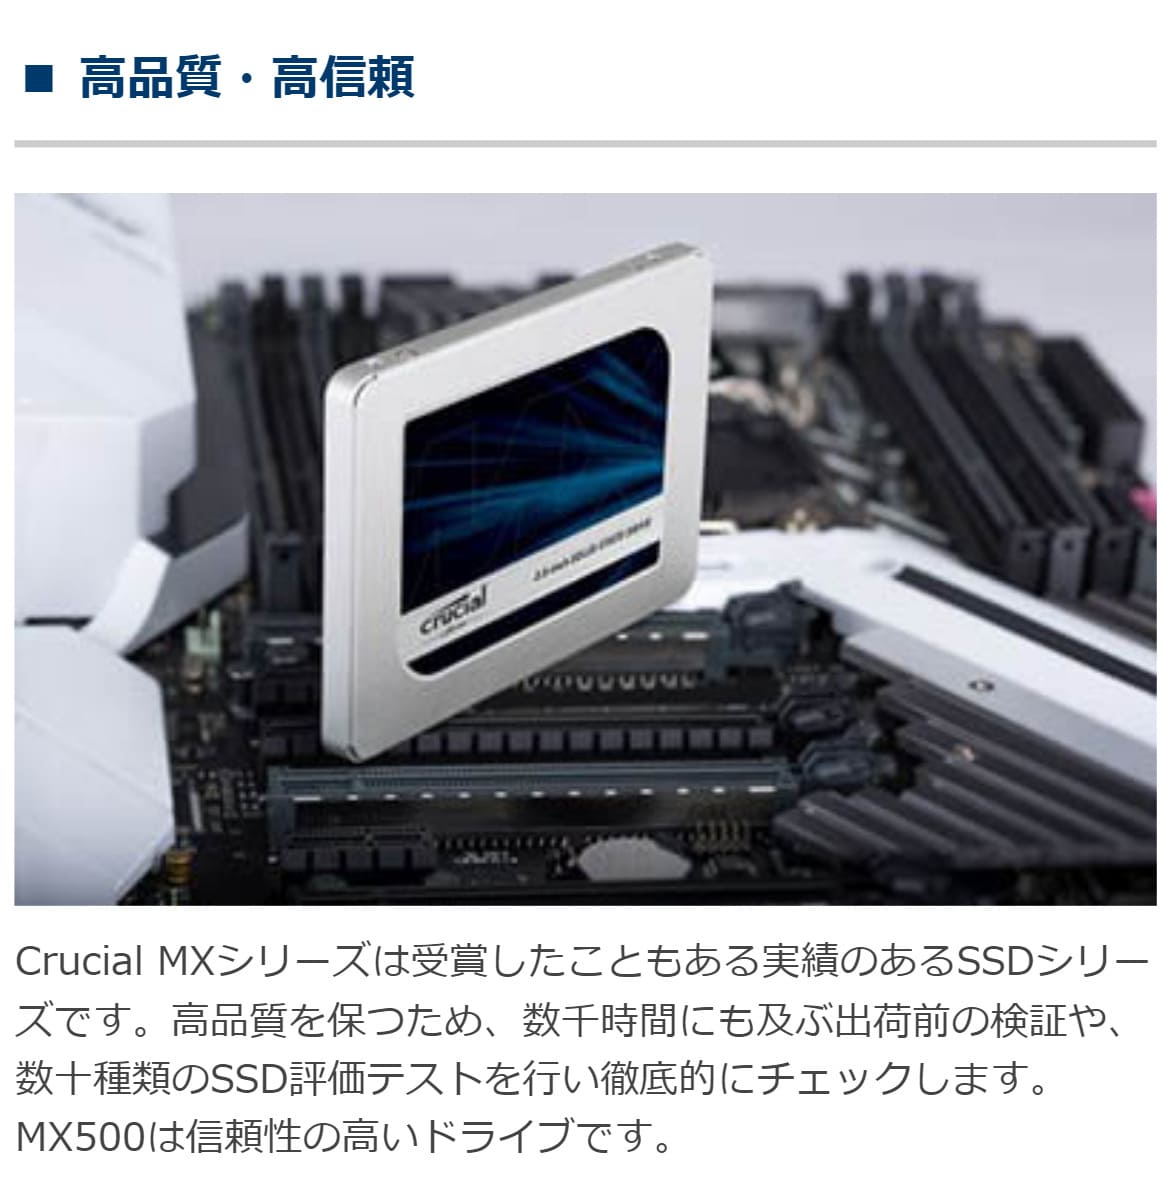 Crucial SSD 500GB CT500MX500SSD1JP